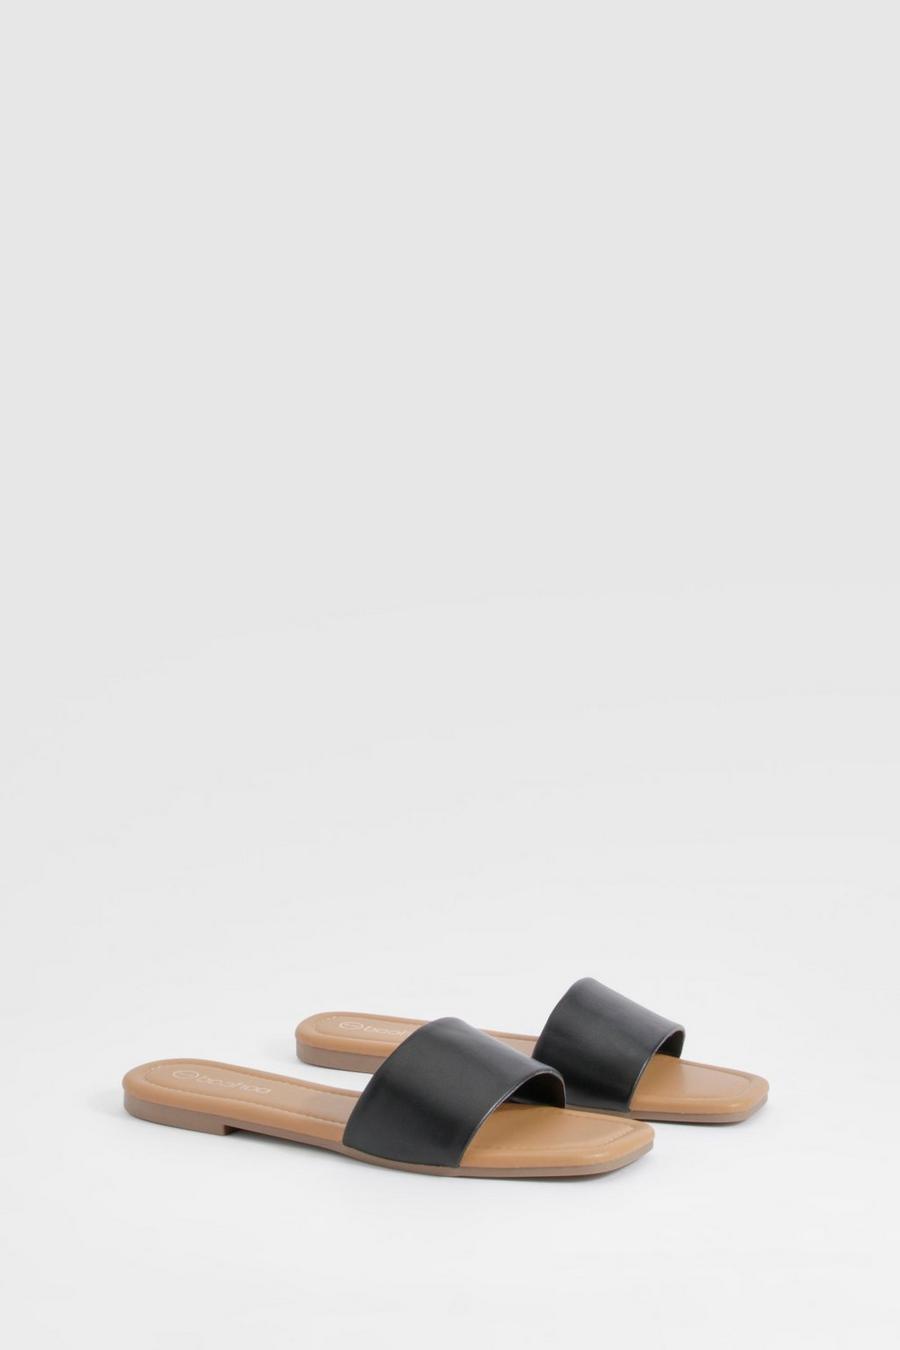 Sandalias mule de holgura ancha minimalistas, Black